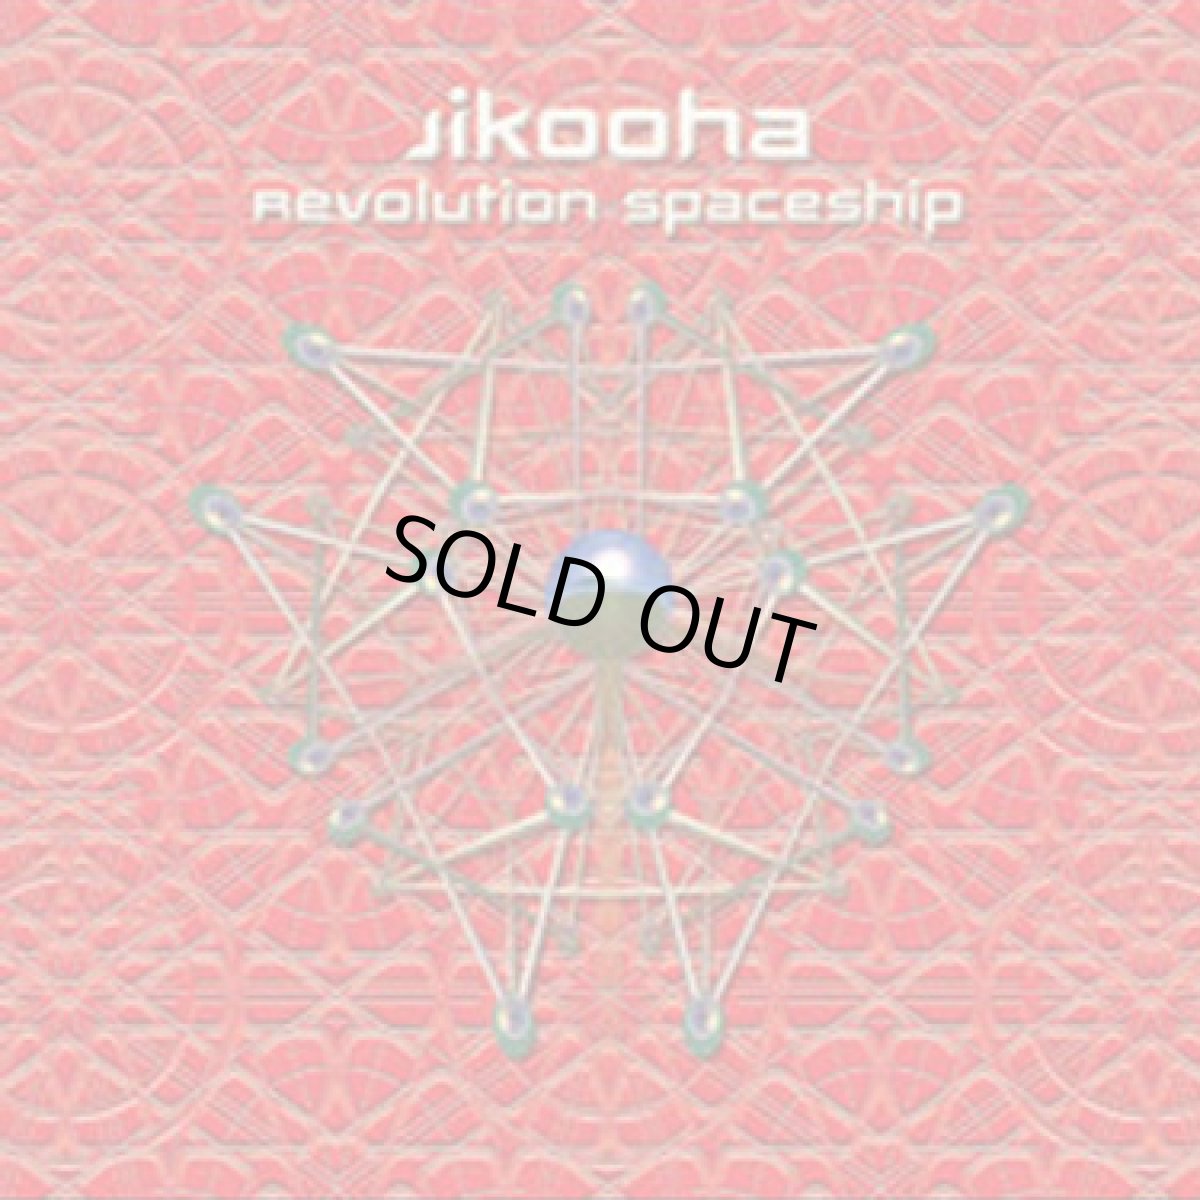 画像1: CD「JIKOOHA / Revolution Spaceship」【ゴアトランス・PSYトランス】 (1)